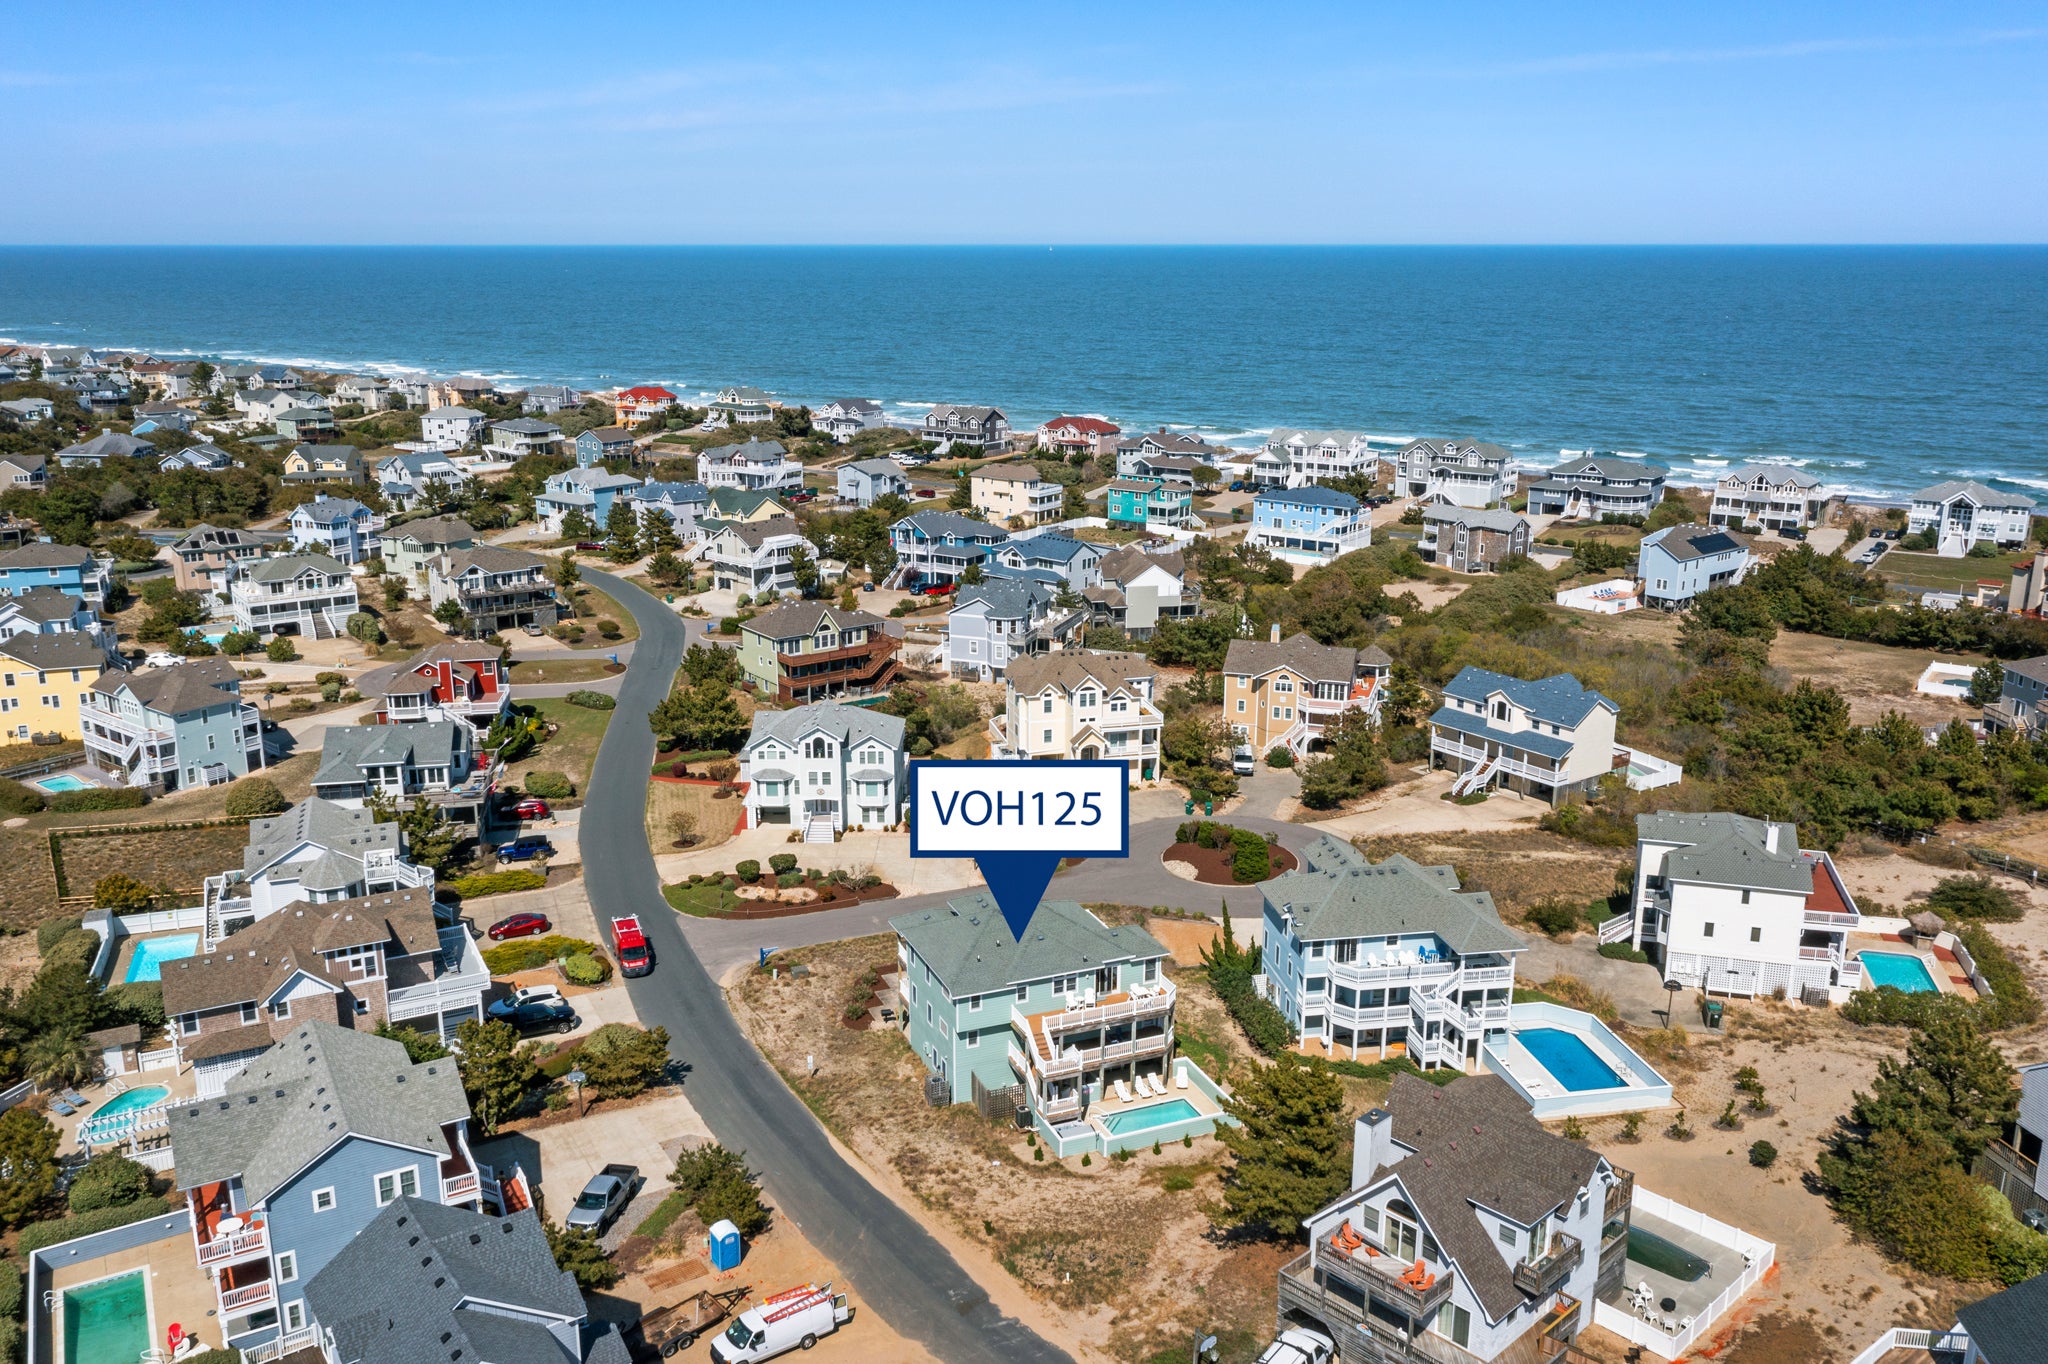 VOH125: Rest-A-Shore | Aerial View